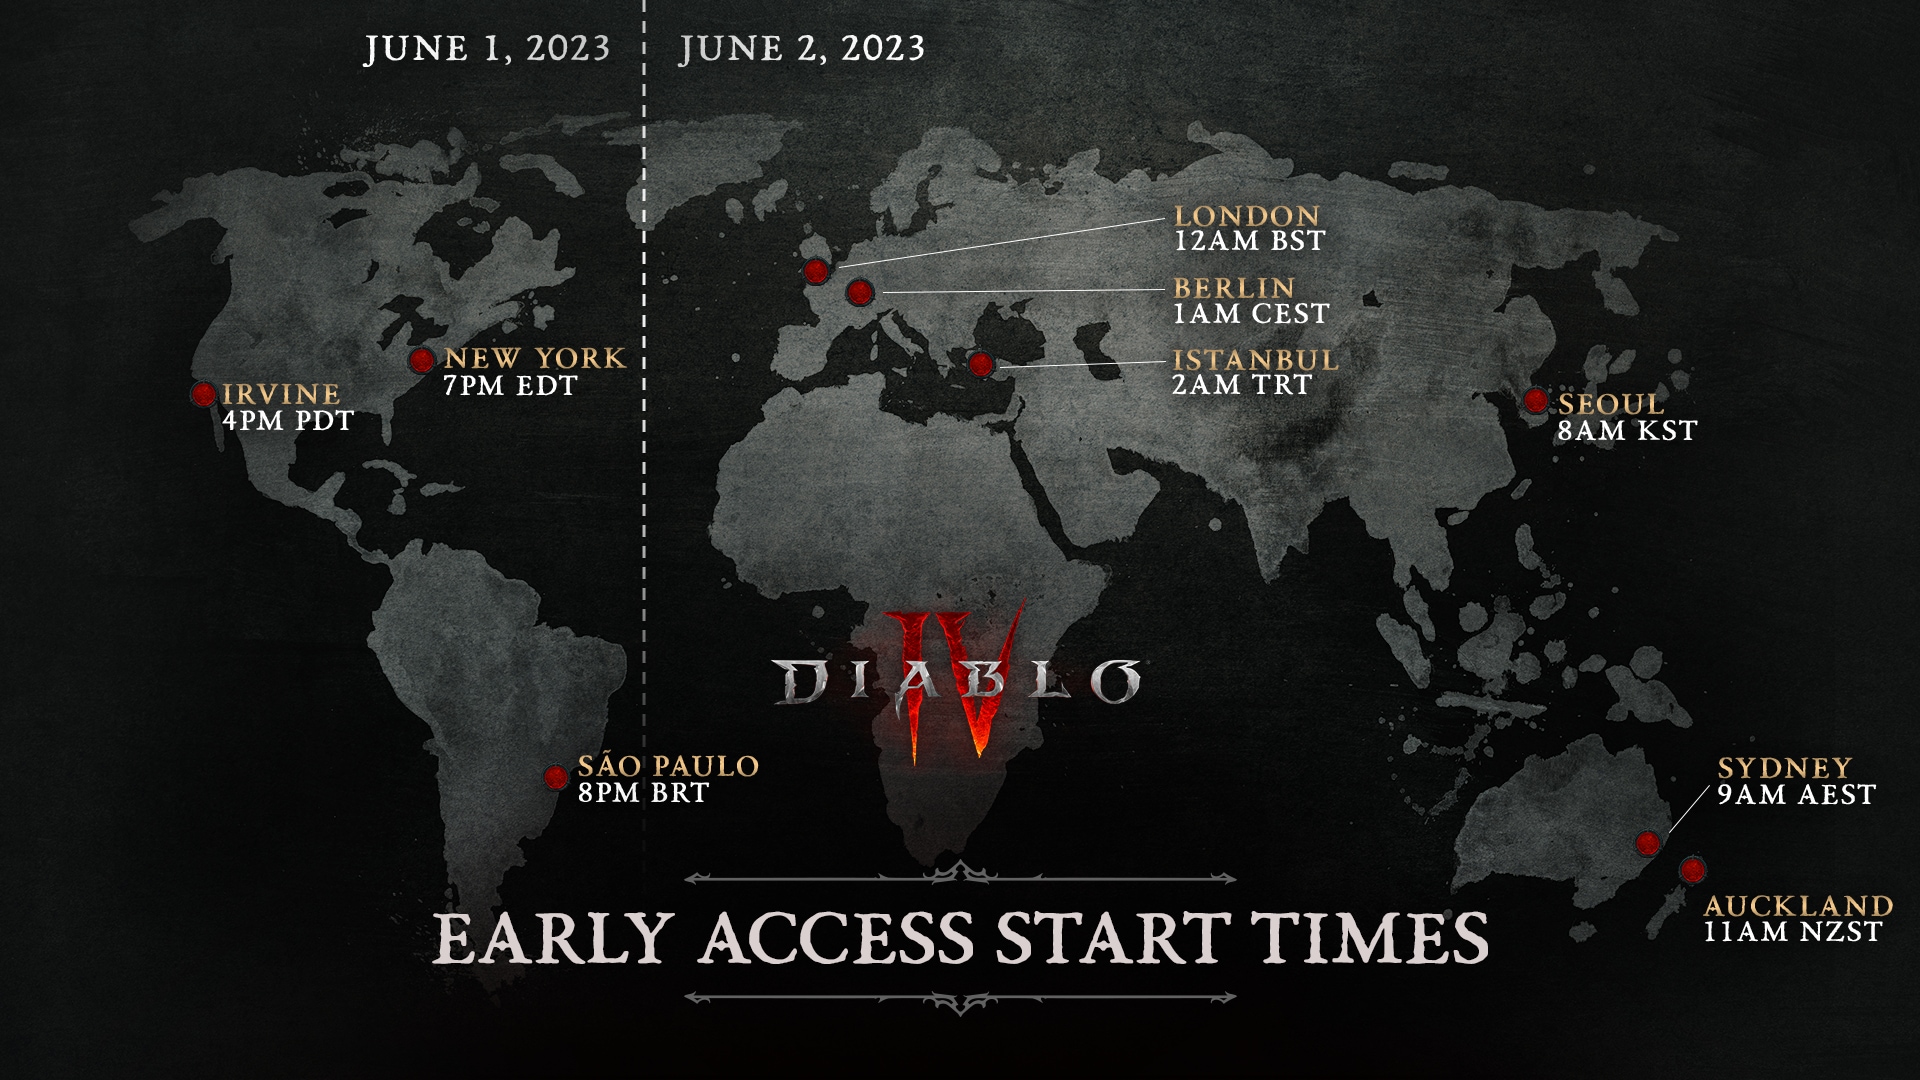 Buy Diablo IV - Digital Deluxe Edition Battle.net PC Key 